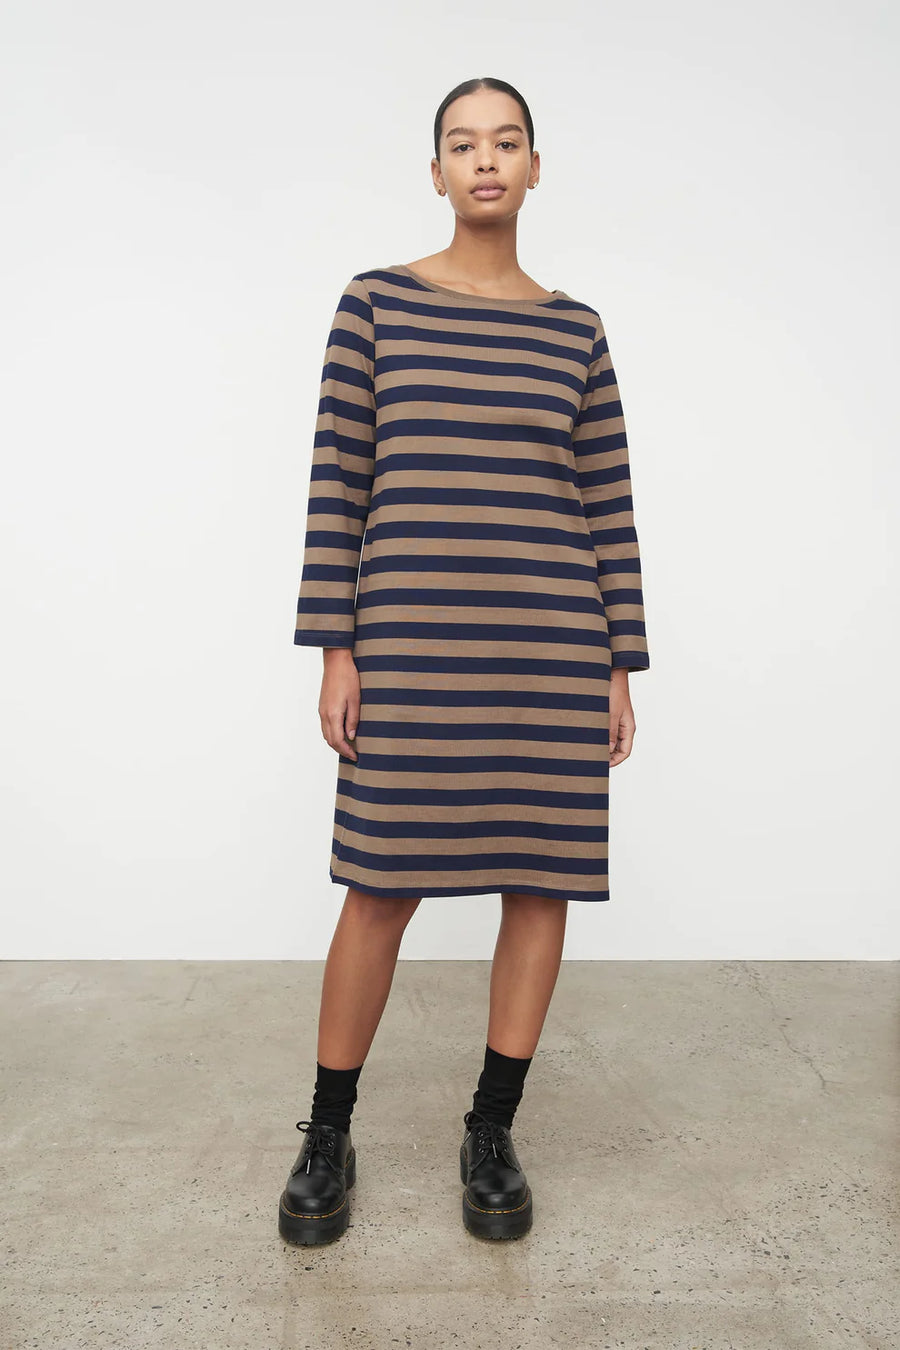 Kowtow | Breton Dress - Navy Taupe Stripe